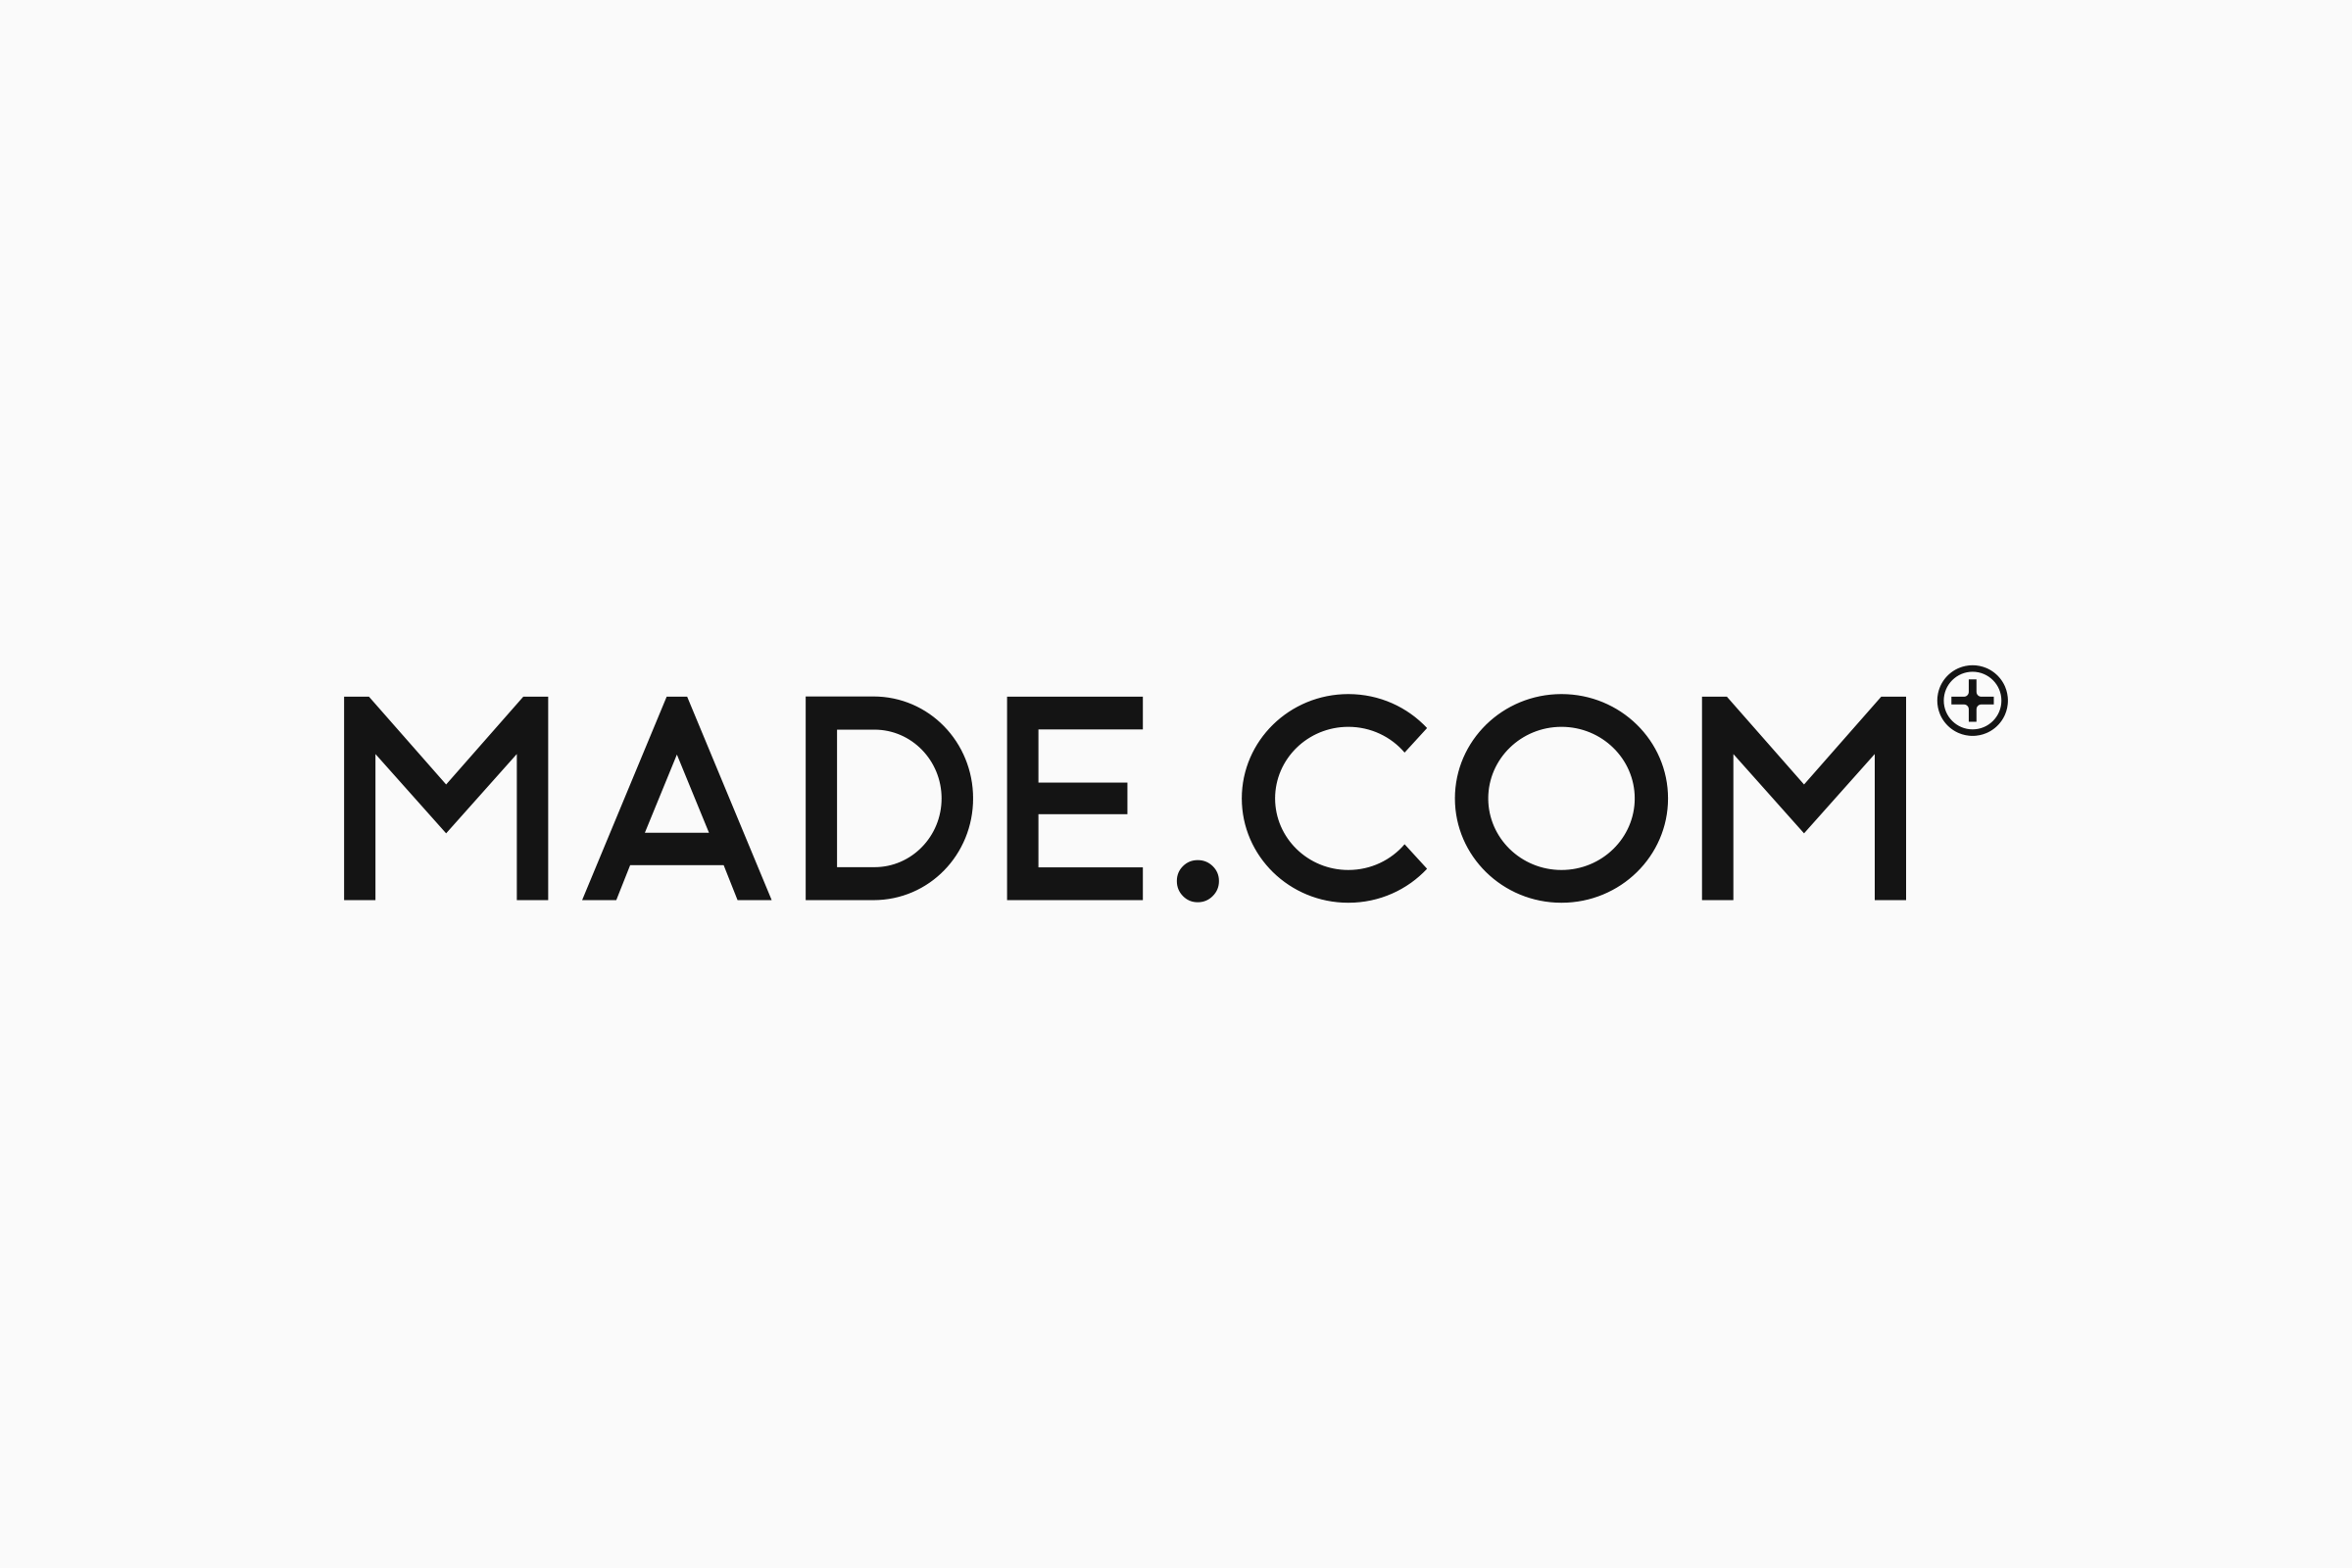 Made.com Logo - Studio.Build